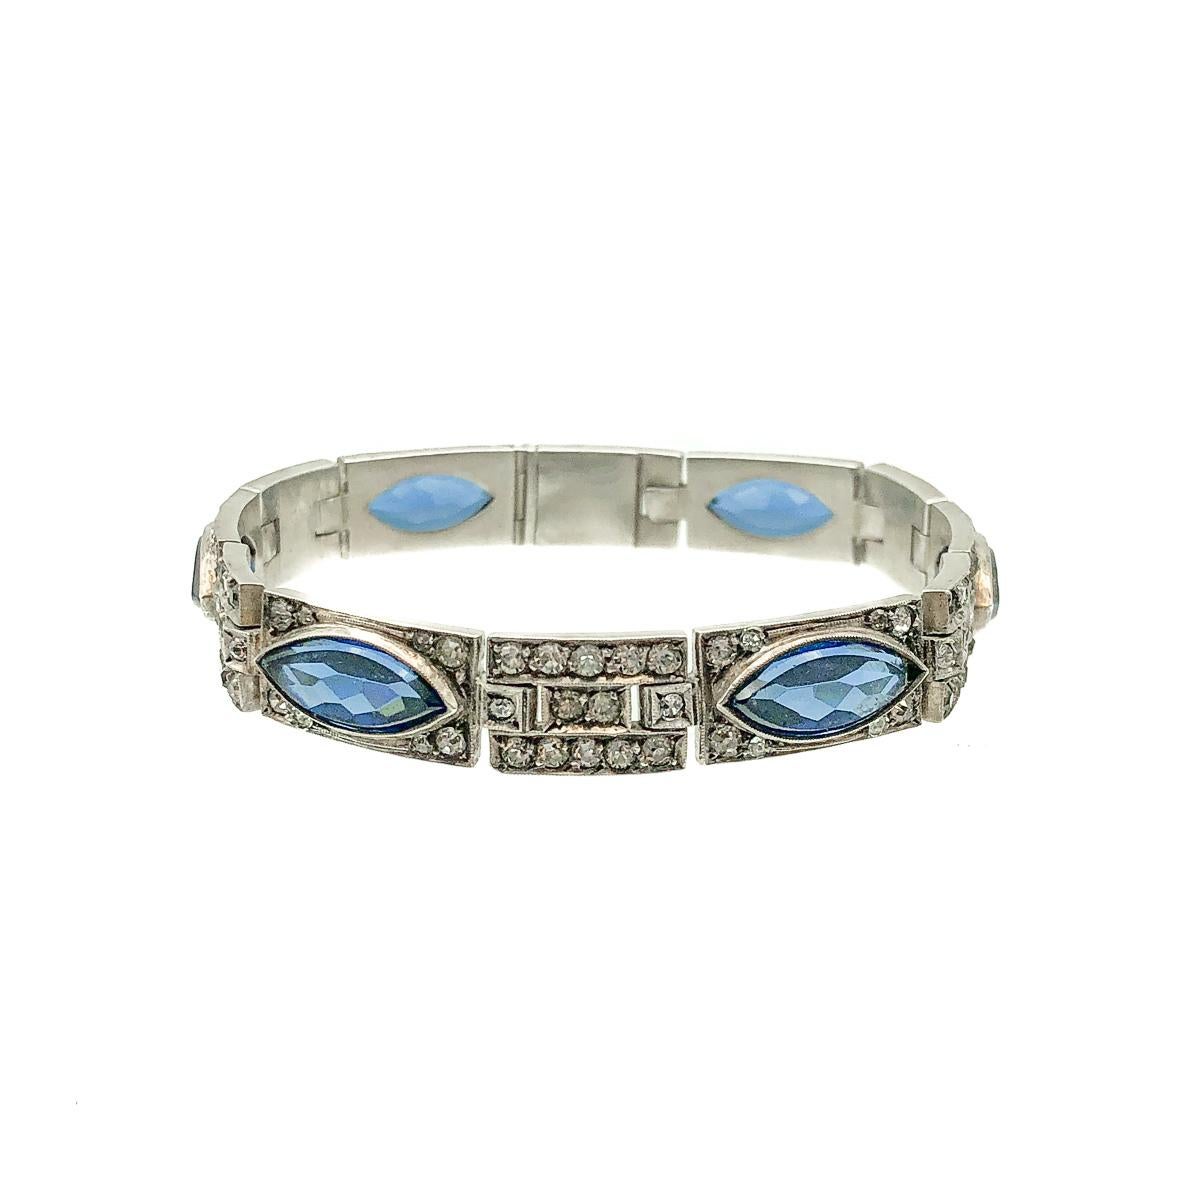 Antique Art Deco Sterling Silver & Sapphire Paste Bracelet 1920s